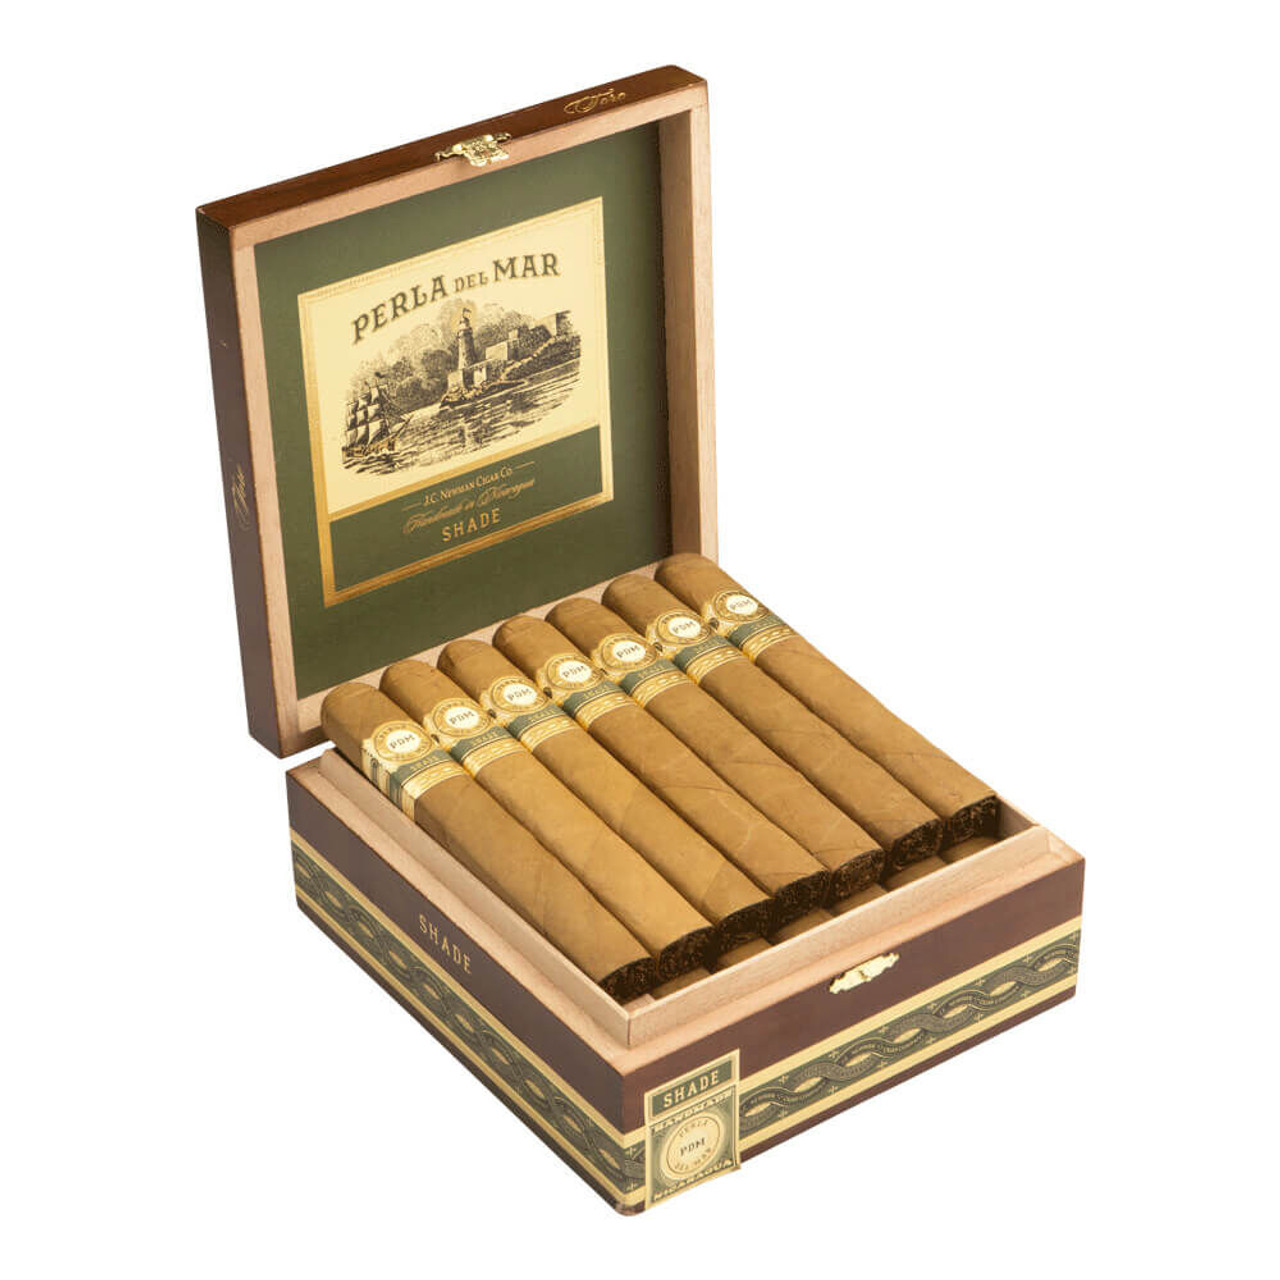 Perla del Mar Shade Toro Cigars - 6.25 x 54 (Box of 25)